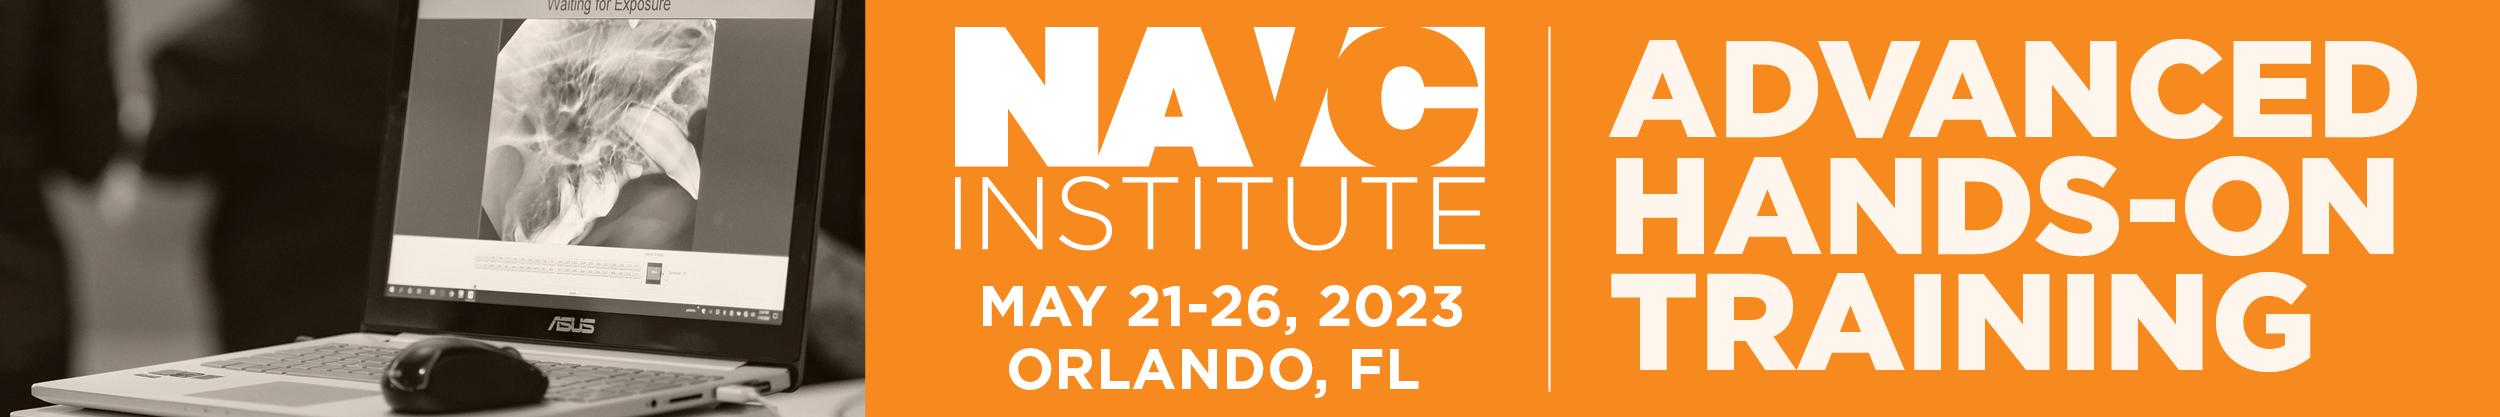 NAVC Institute 2023